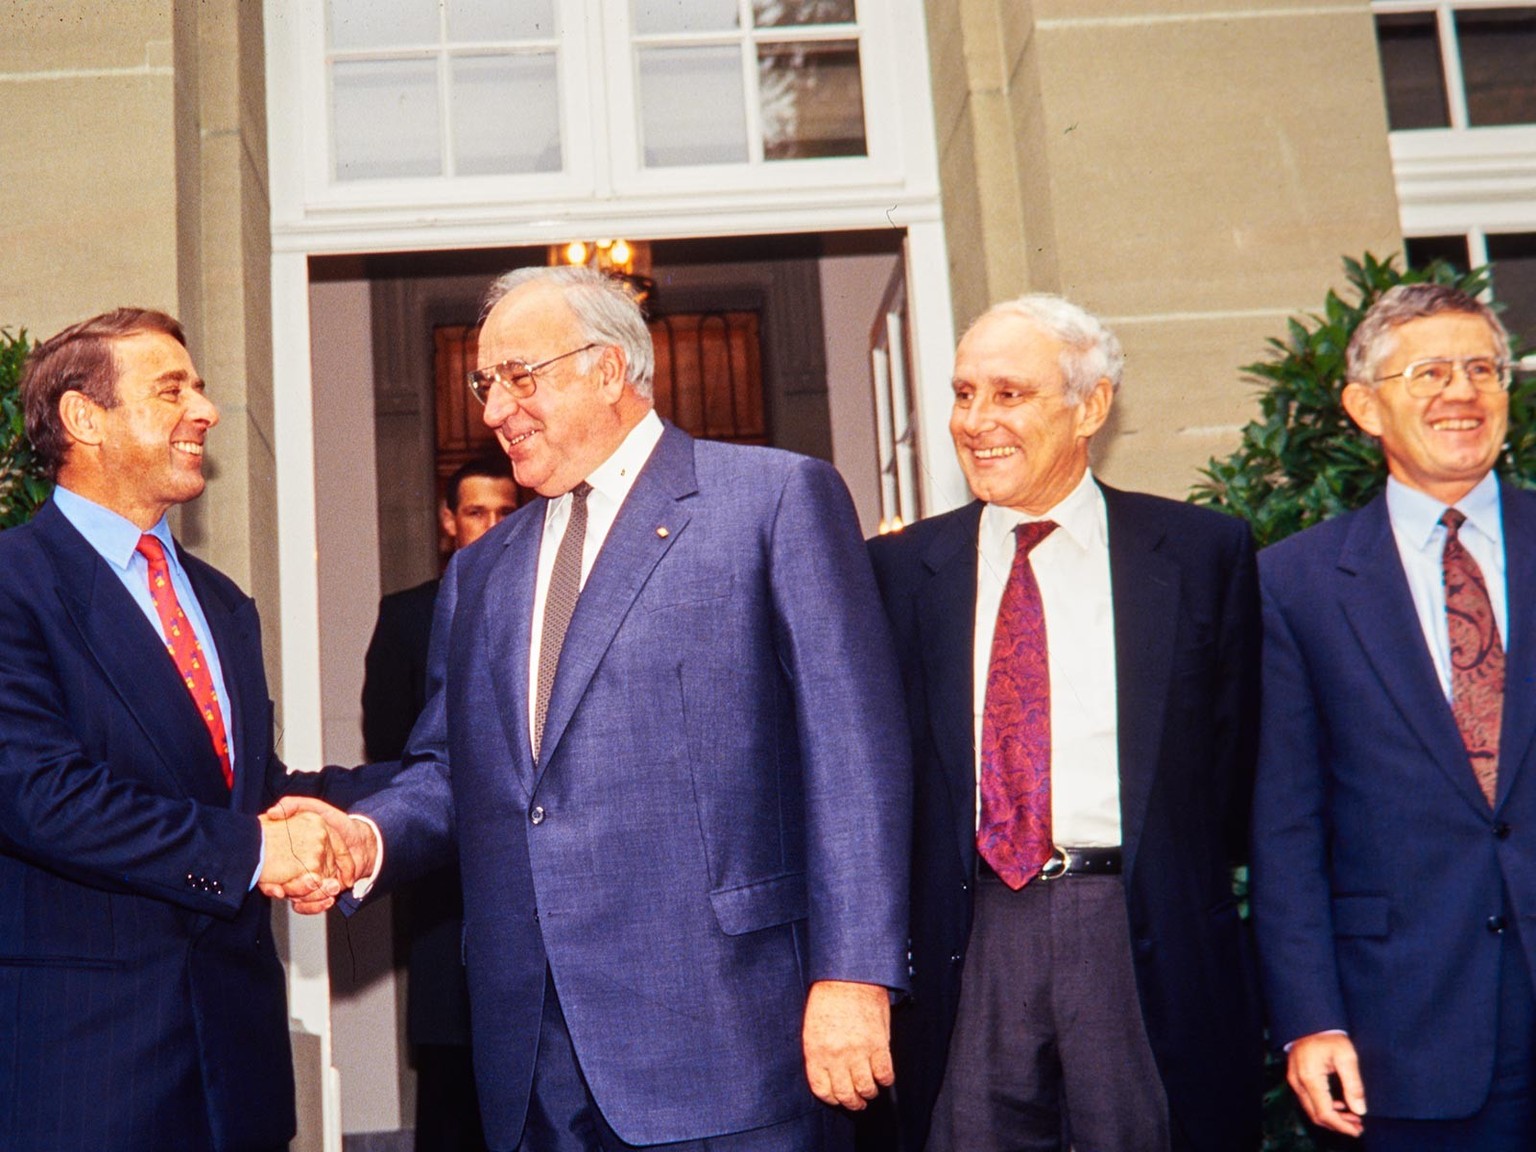 Le président de la Confédération Adolf Ogi rencontre Helmut Kohl au mois d’octobre 1993 en compagnie de Flavio Cotti et Kaspar Villiger.
https://permalink.nationalmuseum.ch/101319199